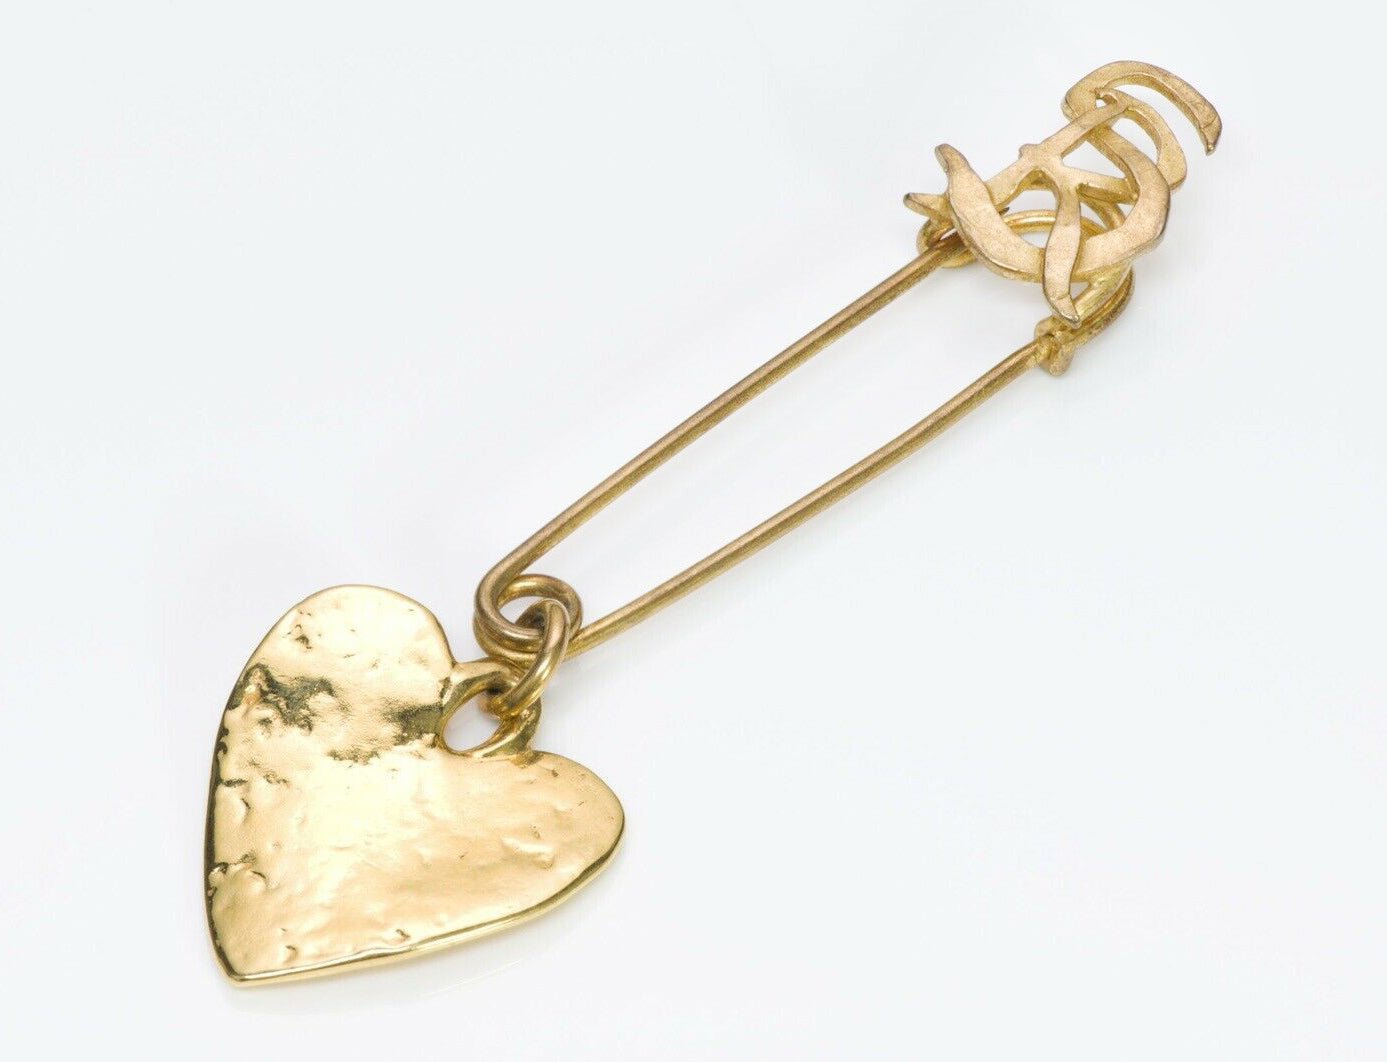 Sonia Rykiel Paris Heart Safety Pin Brooch